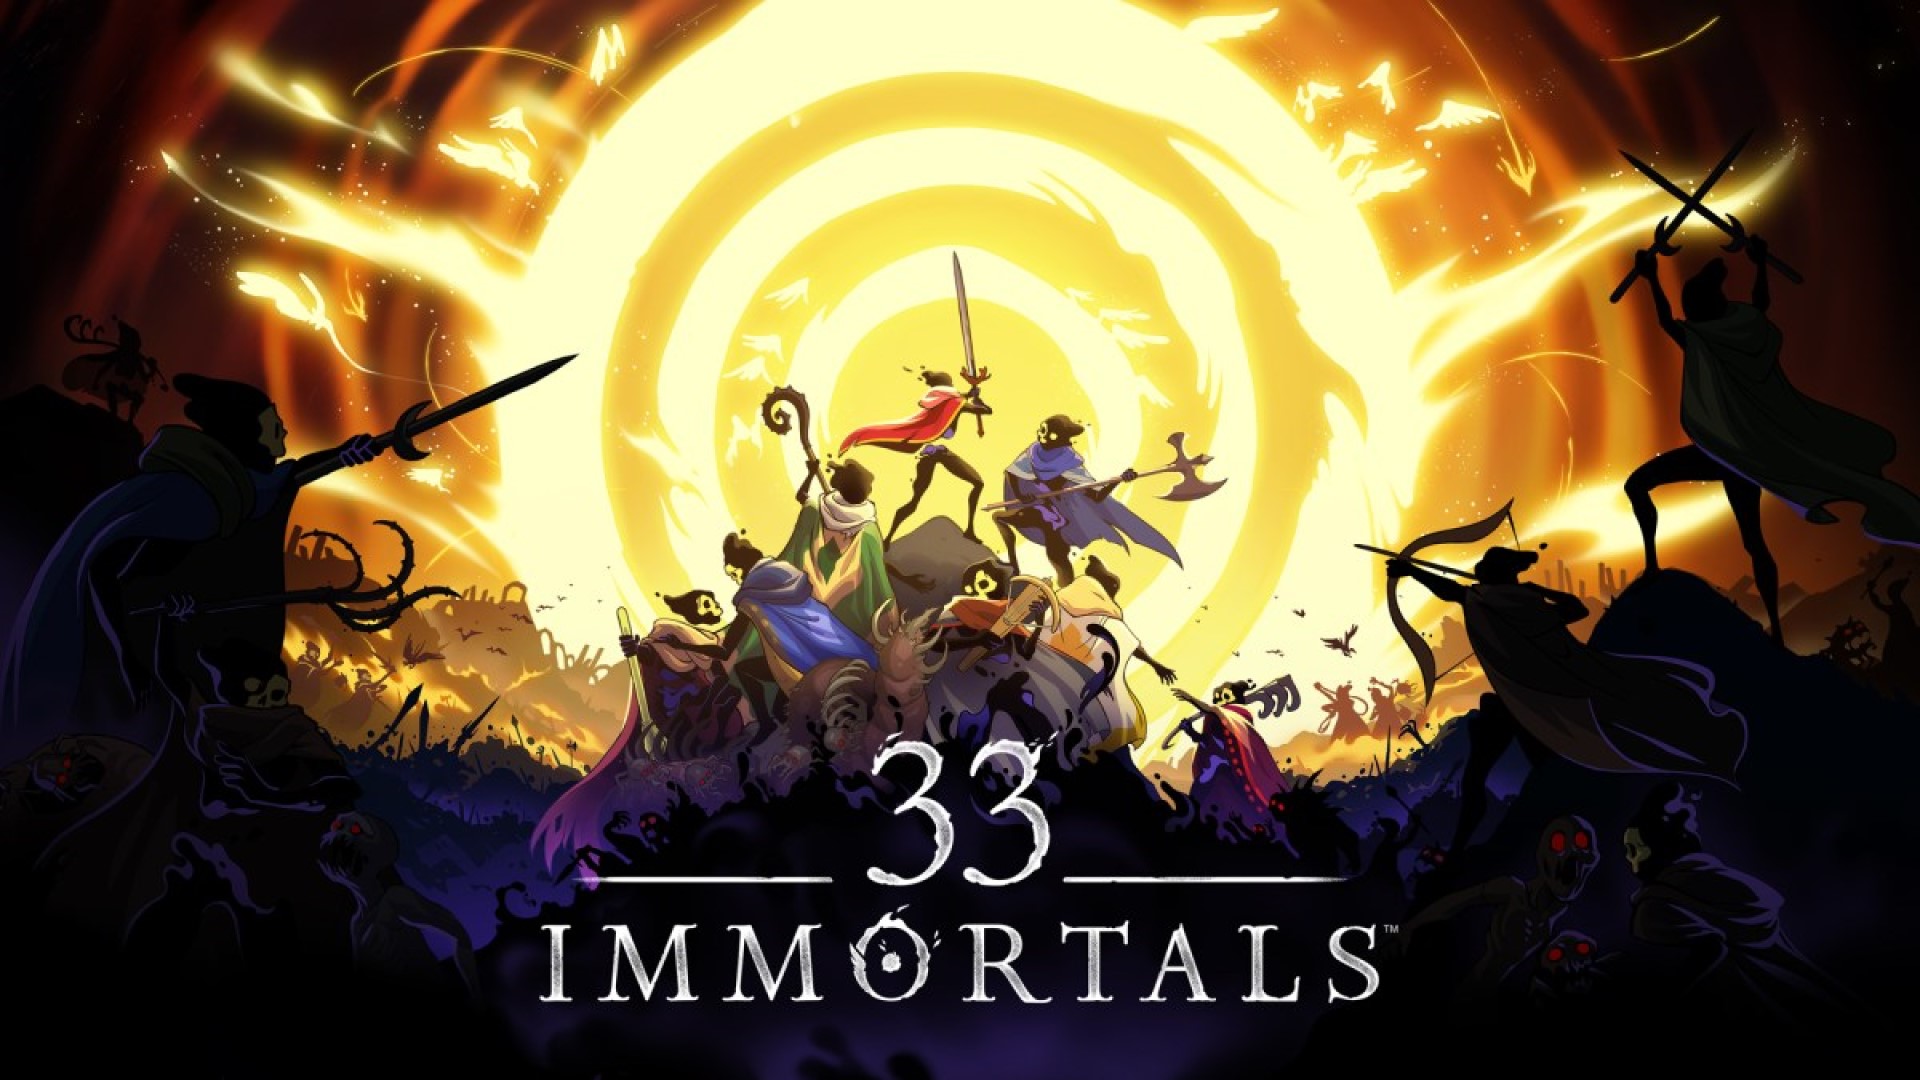 33 Immortals-utviklerne har sluppet en ny trailer med gameplay og kunngjort datoen for spillets lukkede testing.